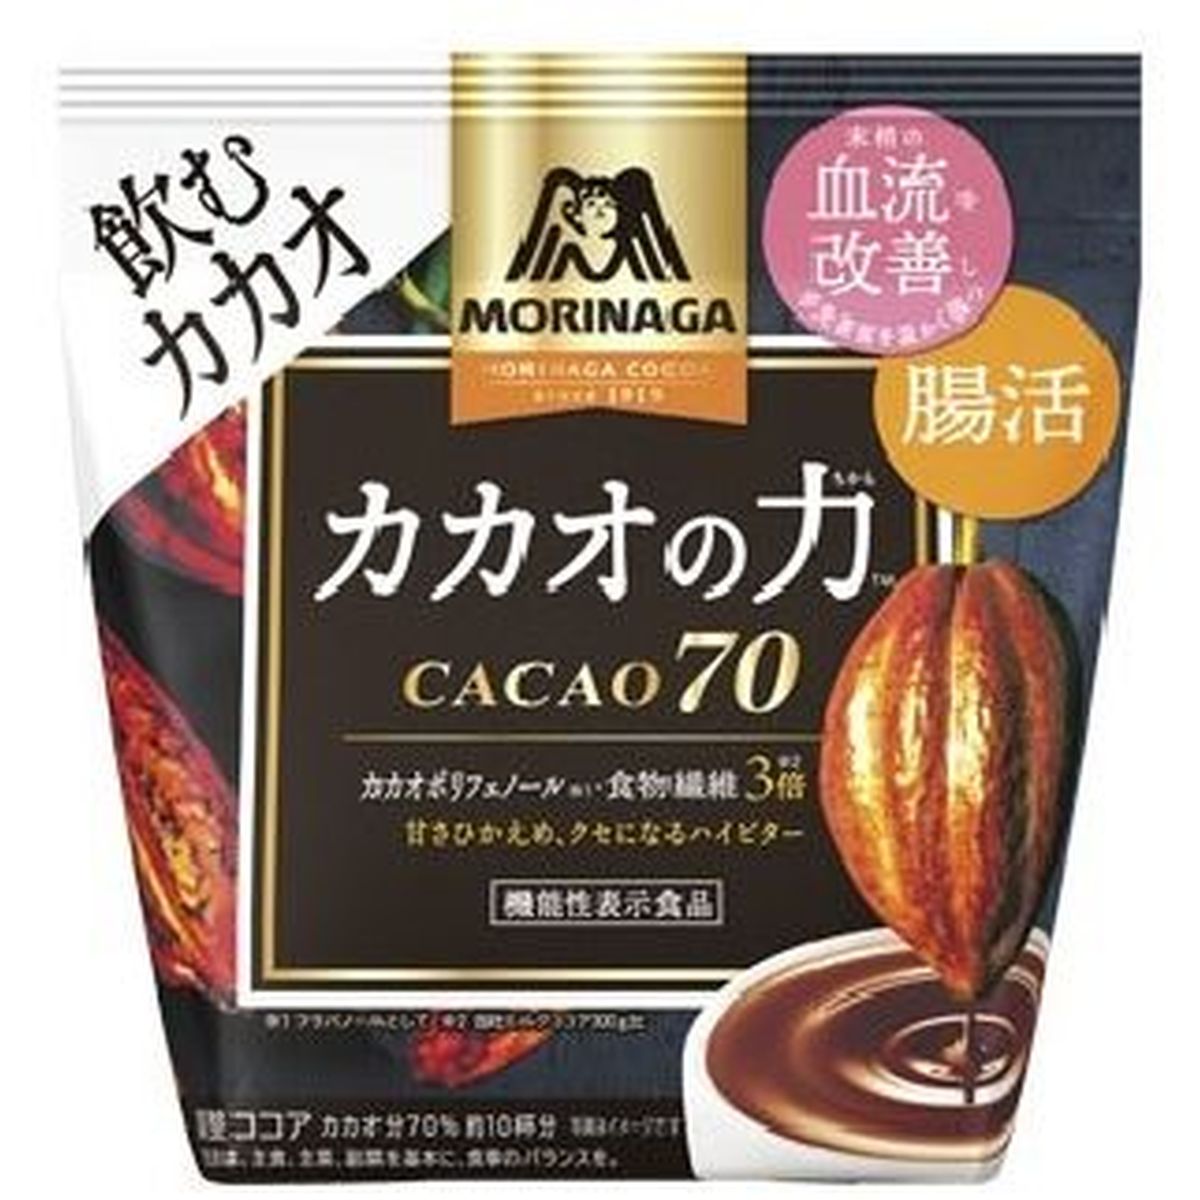 【12個入リ】森永製菓 カカオノ力 CACAO70 200g